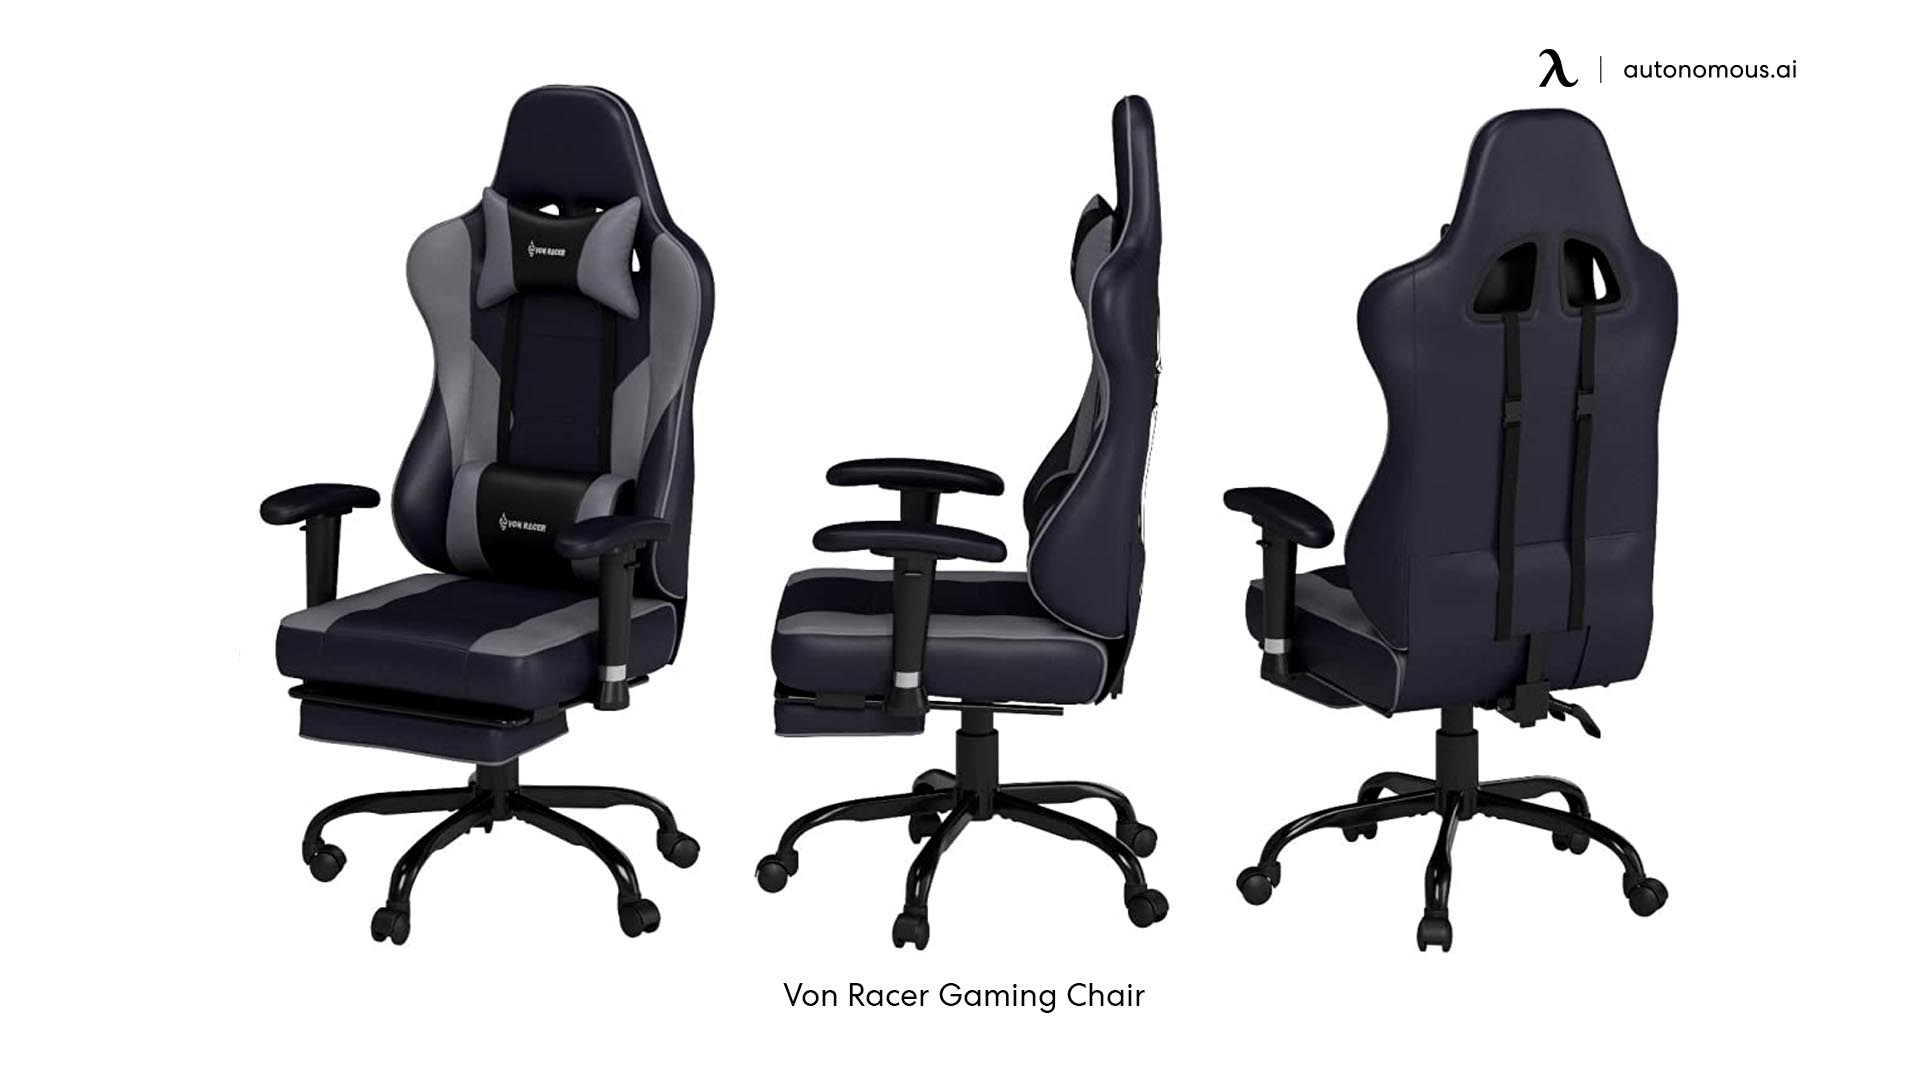 Von Racer Gaming Chair